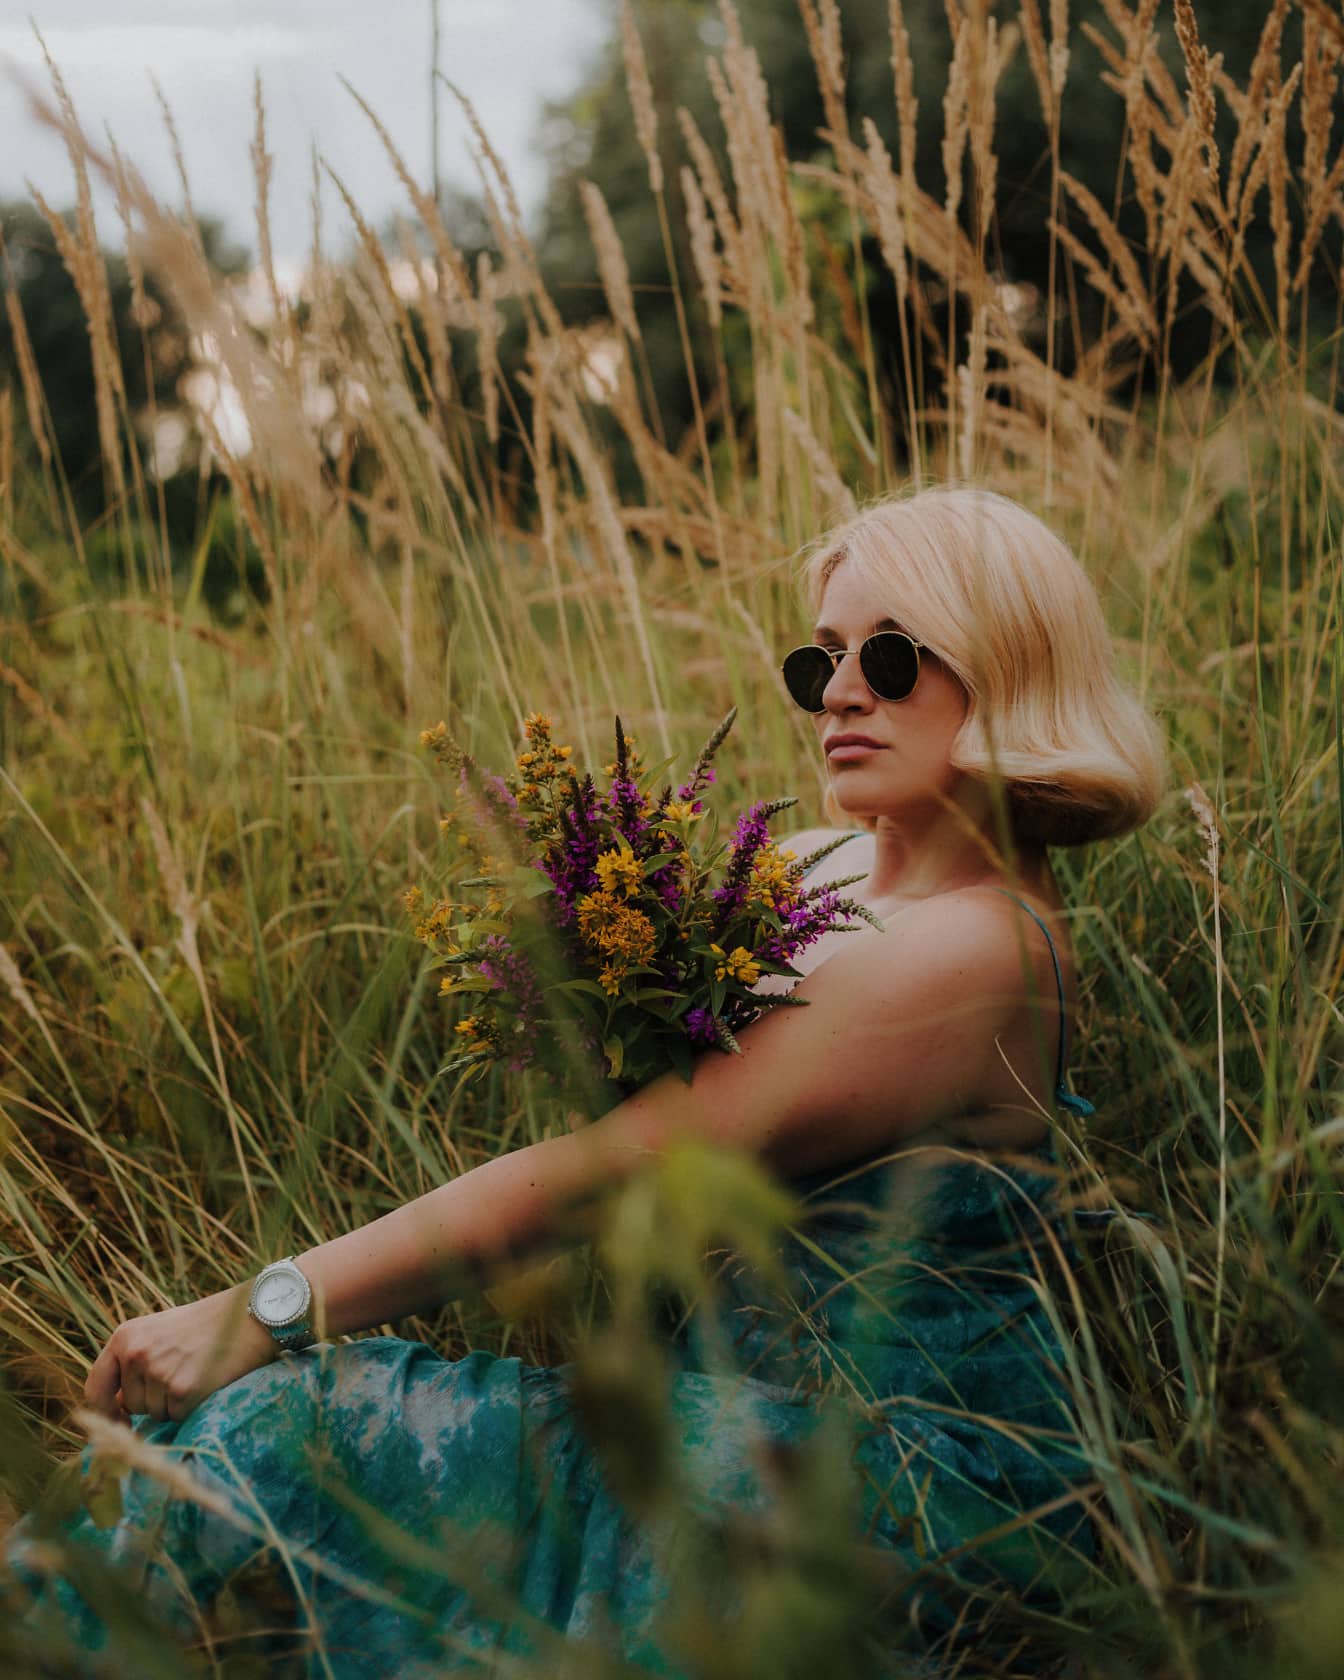 Očarujúca blond mladá žena fotomodel pózuje v trávnatých rastlinách s kyticou poľných kvetov